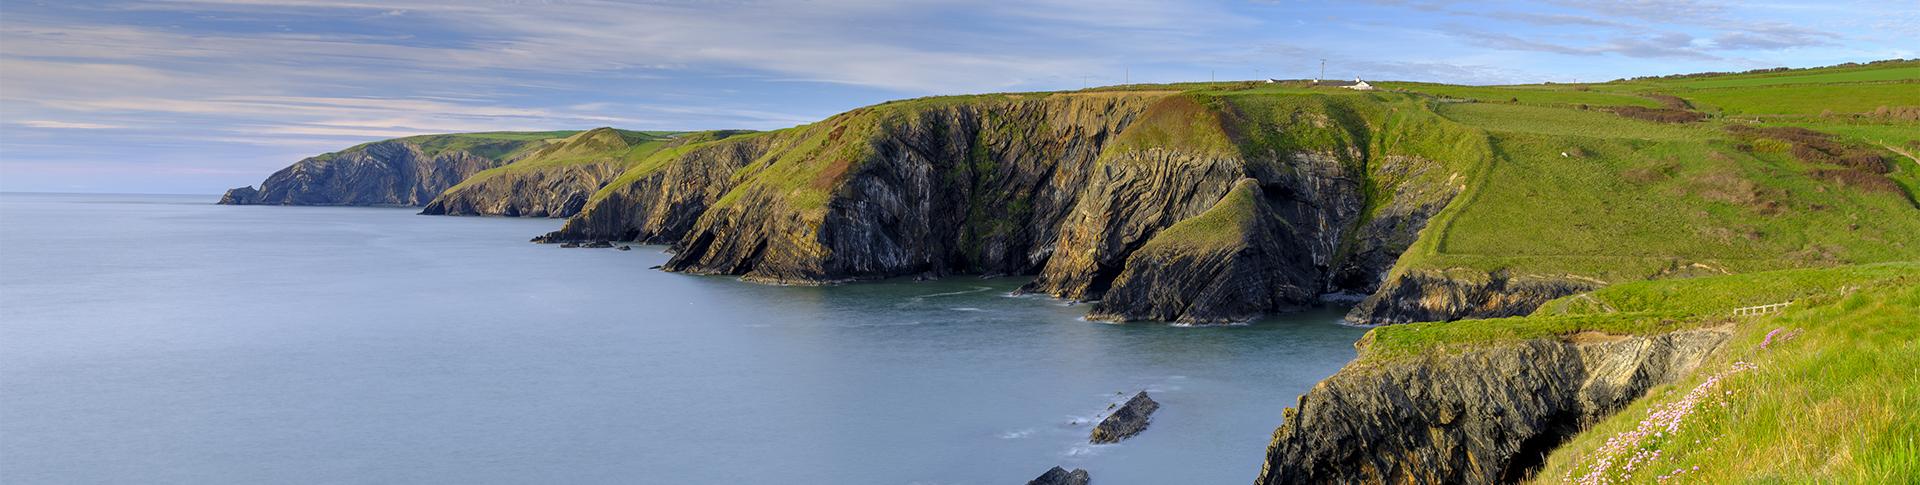 Ten unbelievable views along the Pembrokeshire Coastal Path banner image